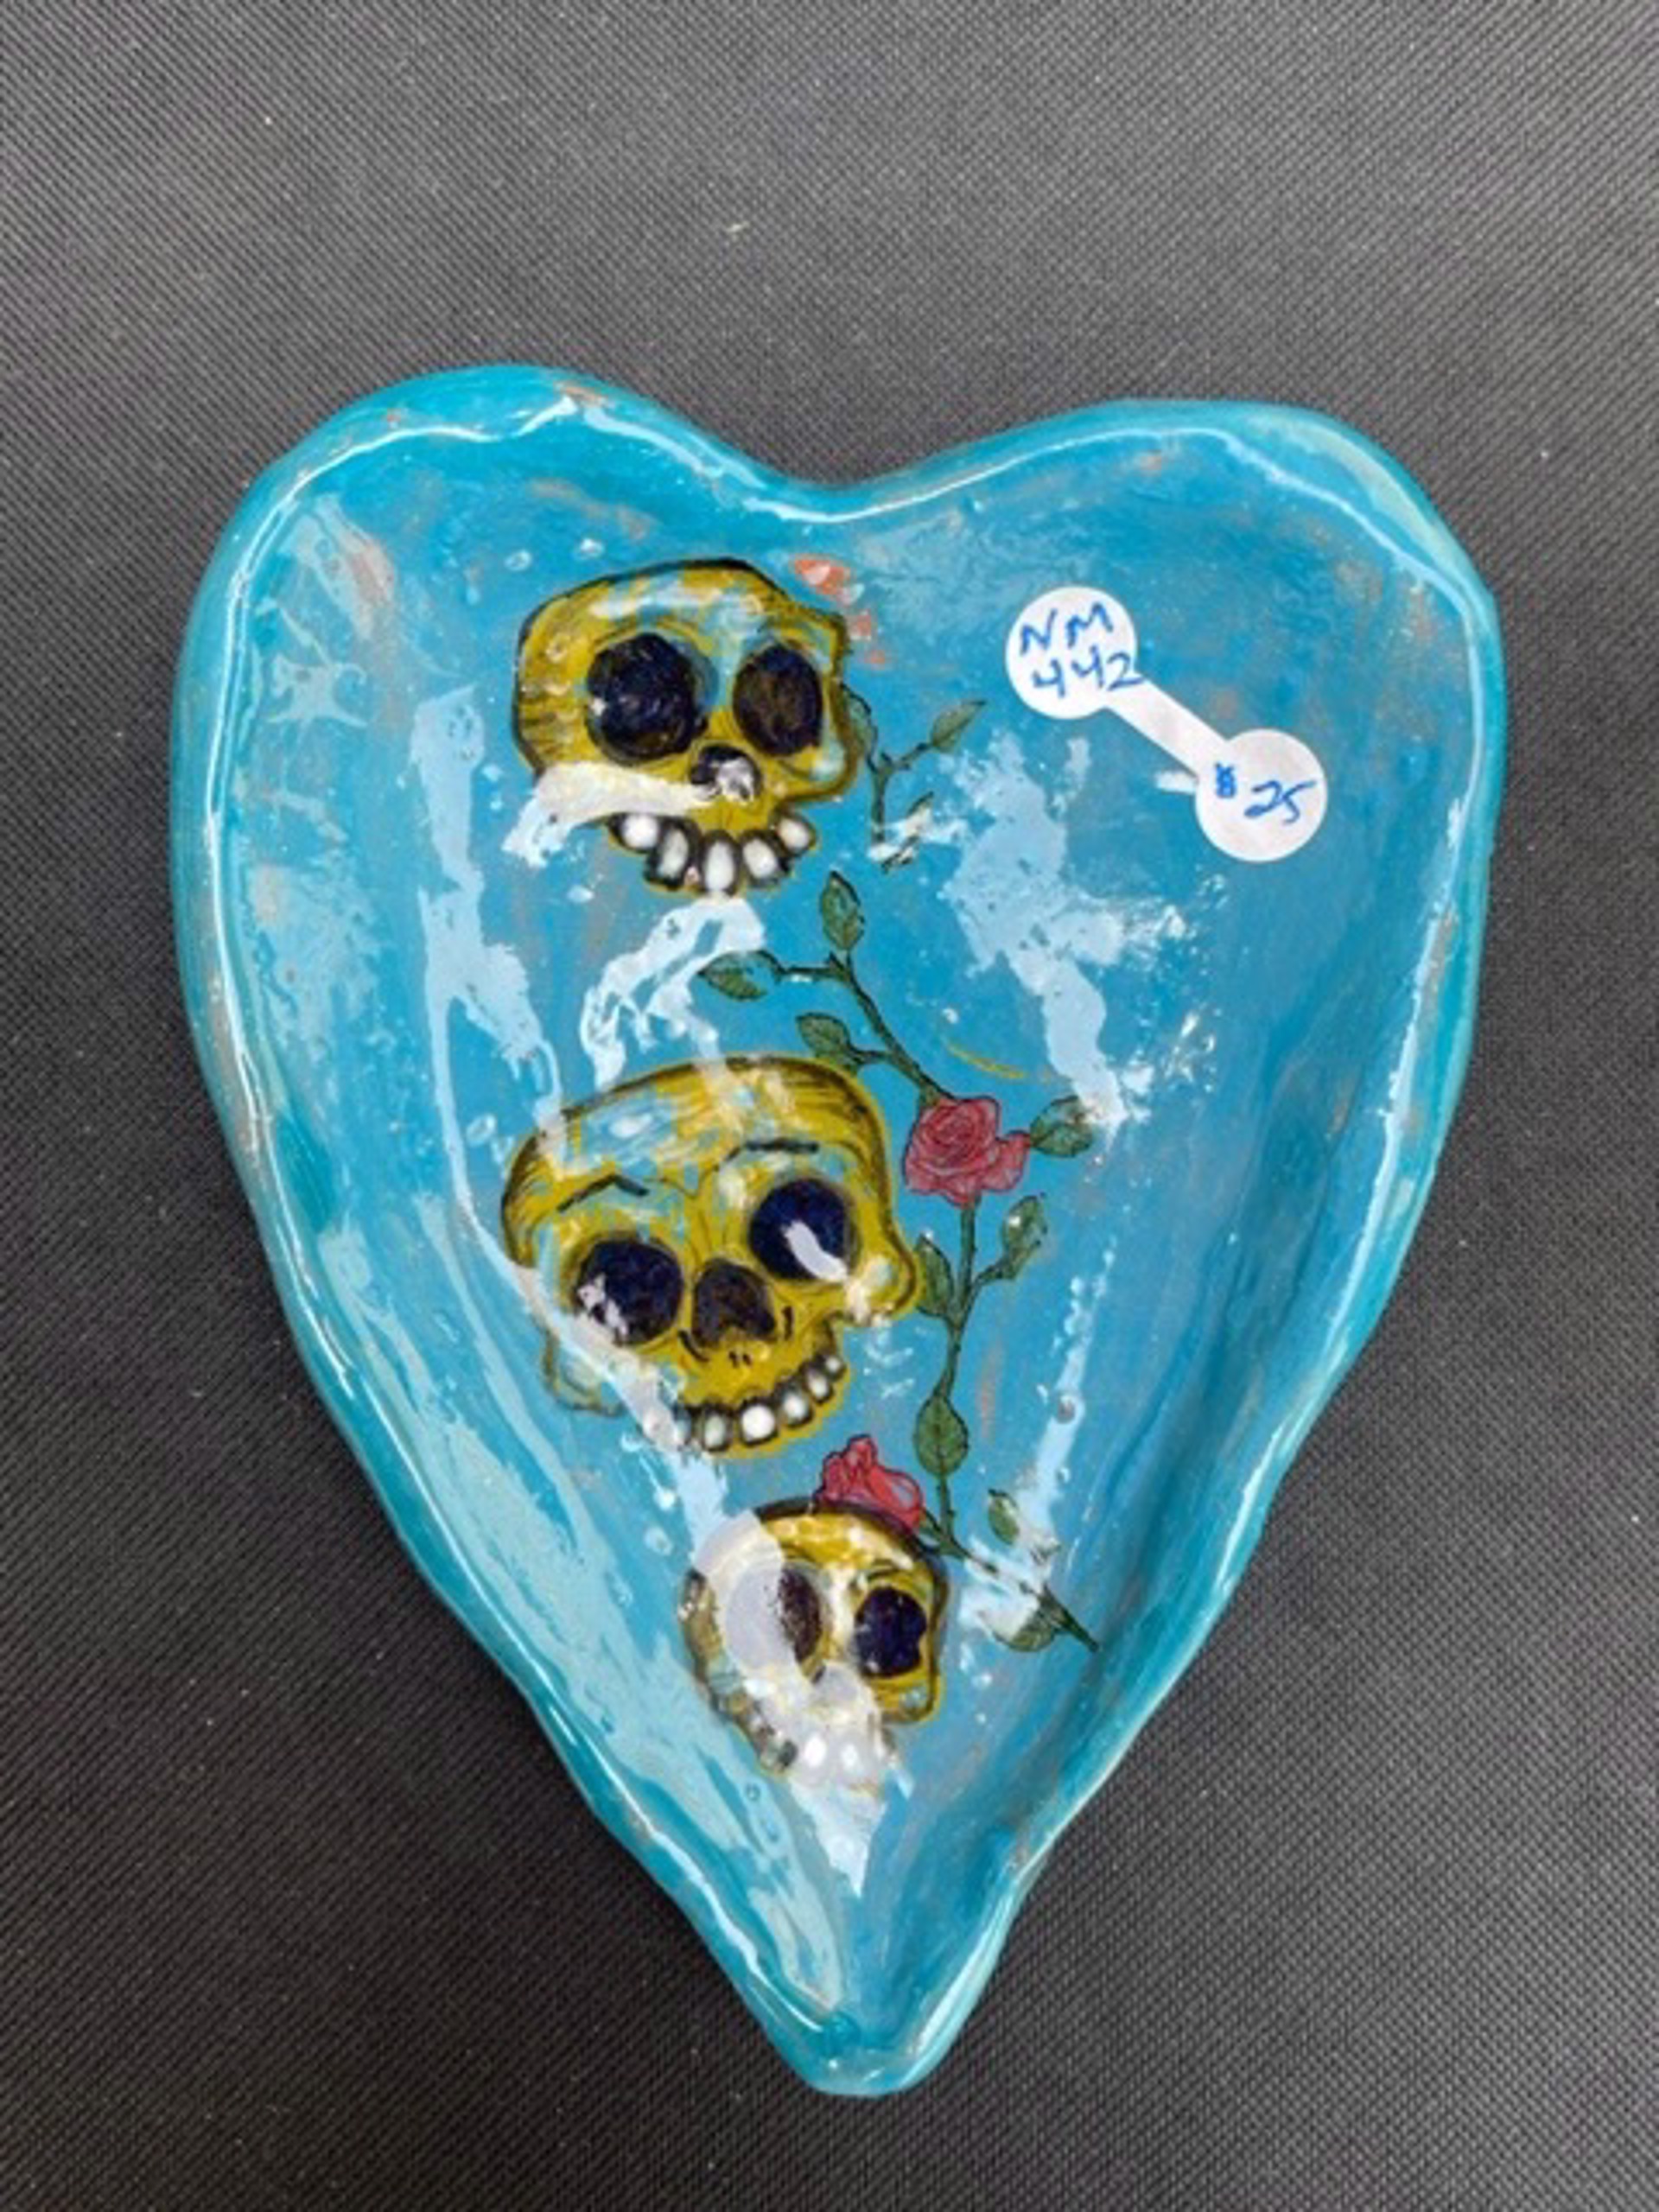 Blue Heart Dish by Nicole Merkens